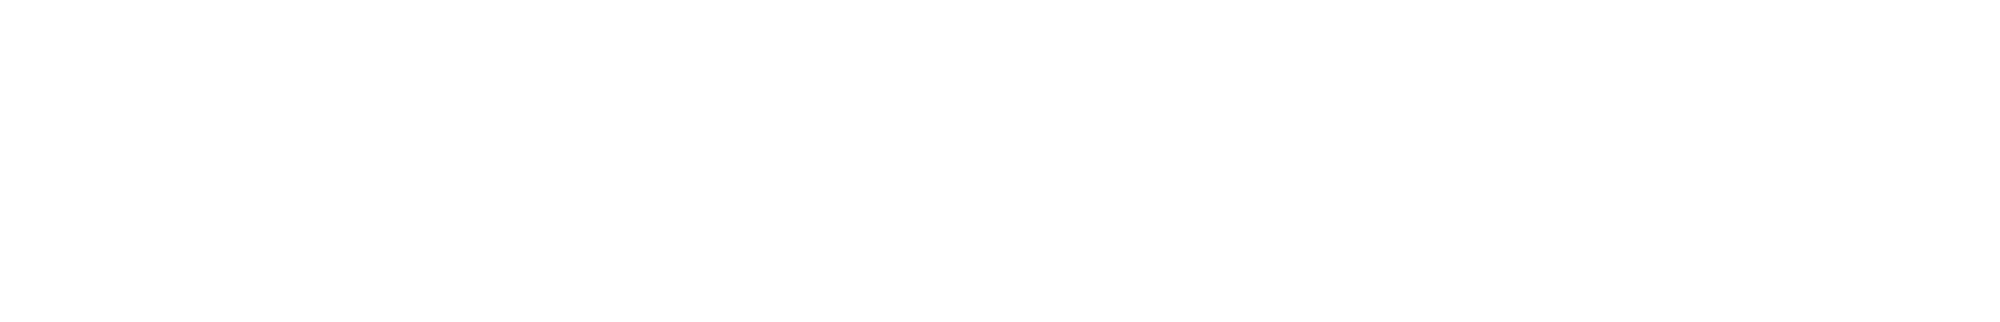 ScreenPrinting.com logo